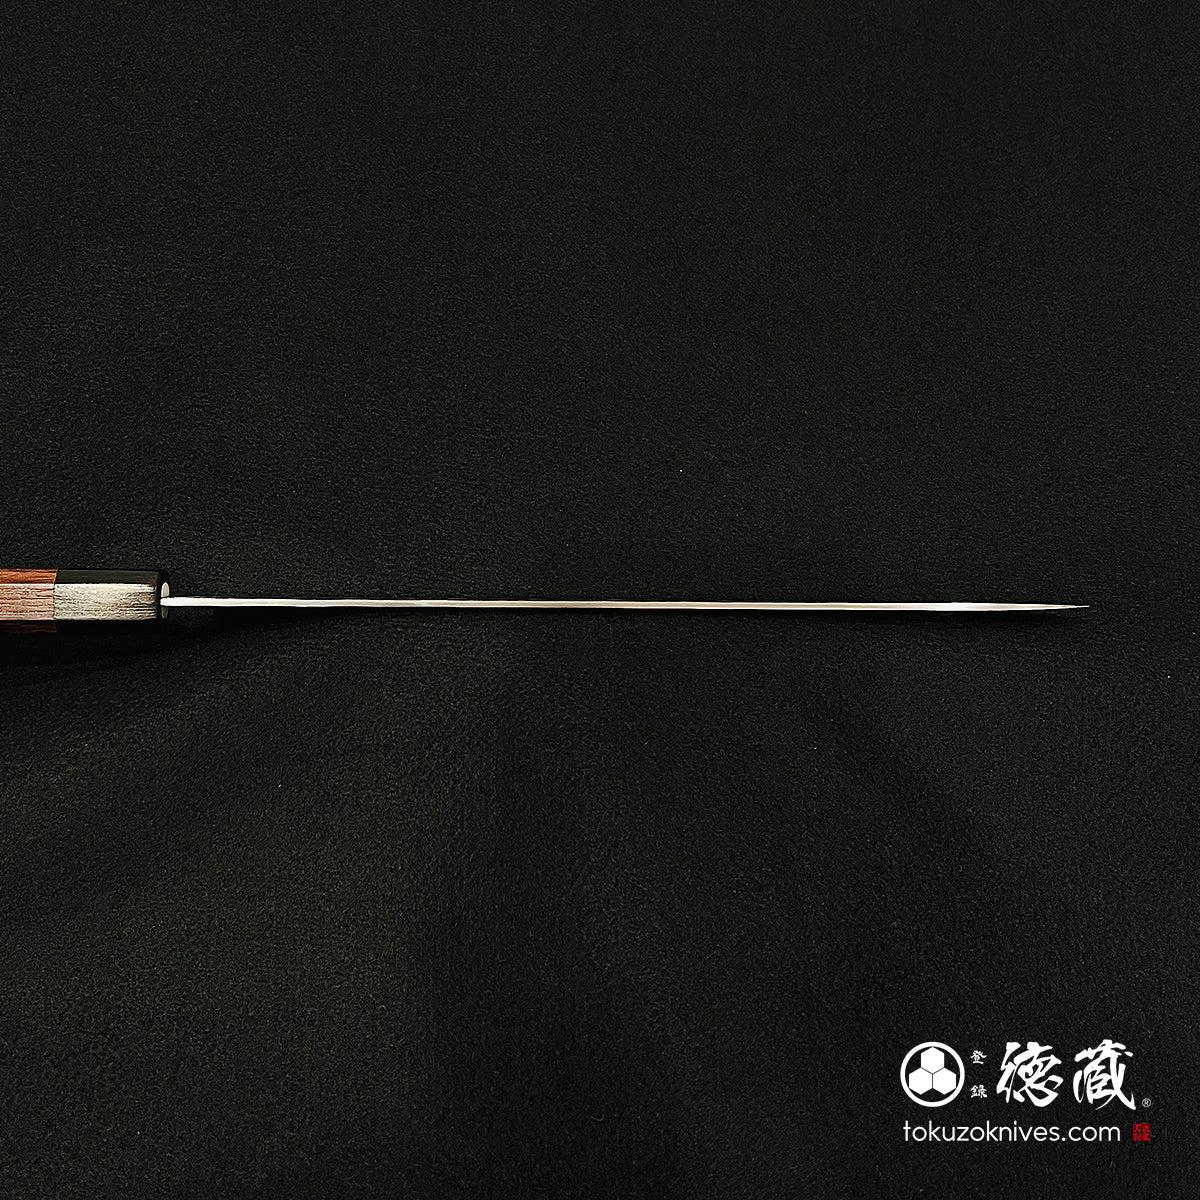 AUS10 Sujihiki knife, Damarose octagonal handle